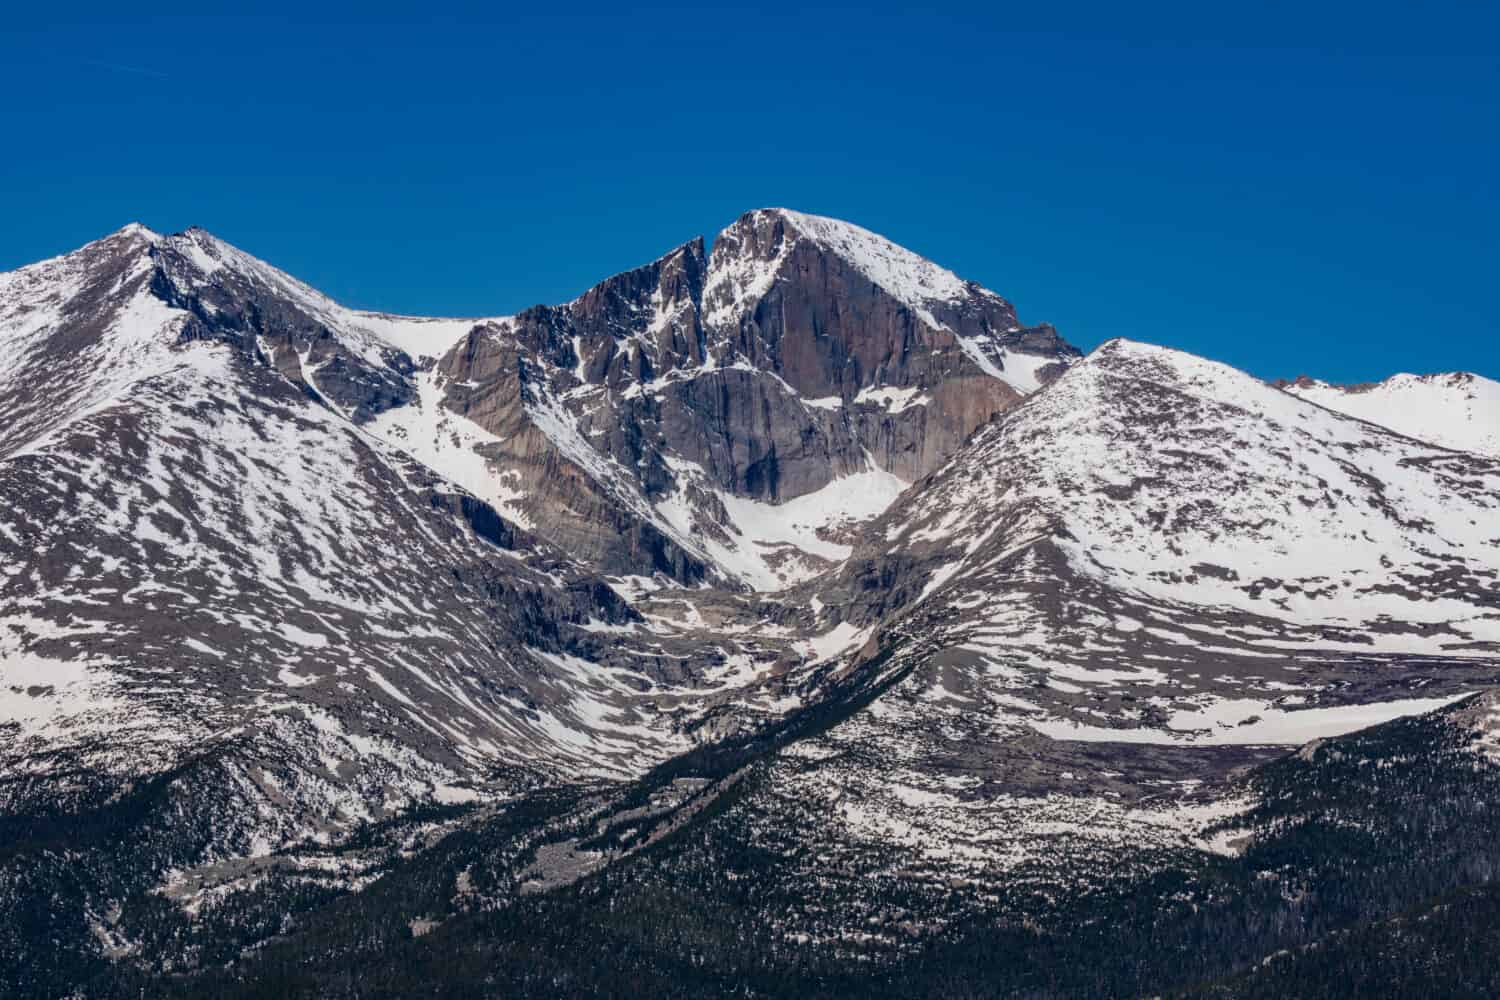 Snowy view of Longs Peak in Colorado